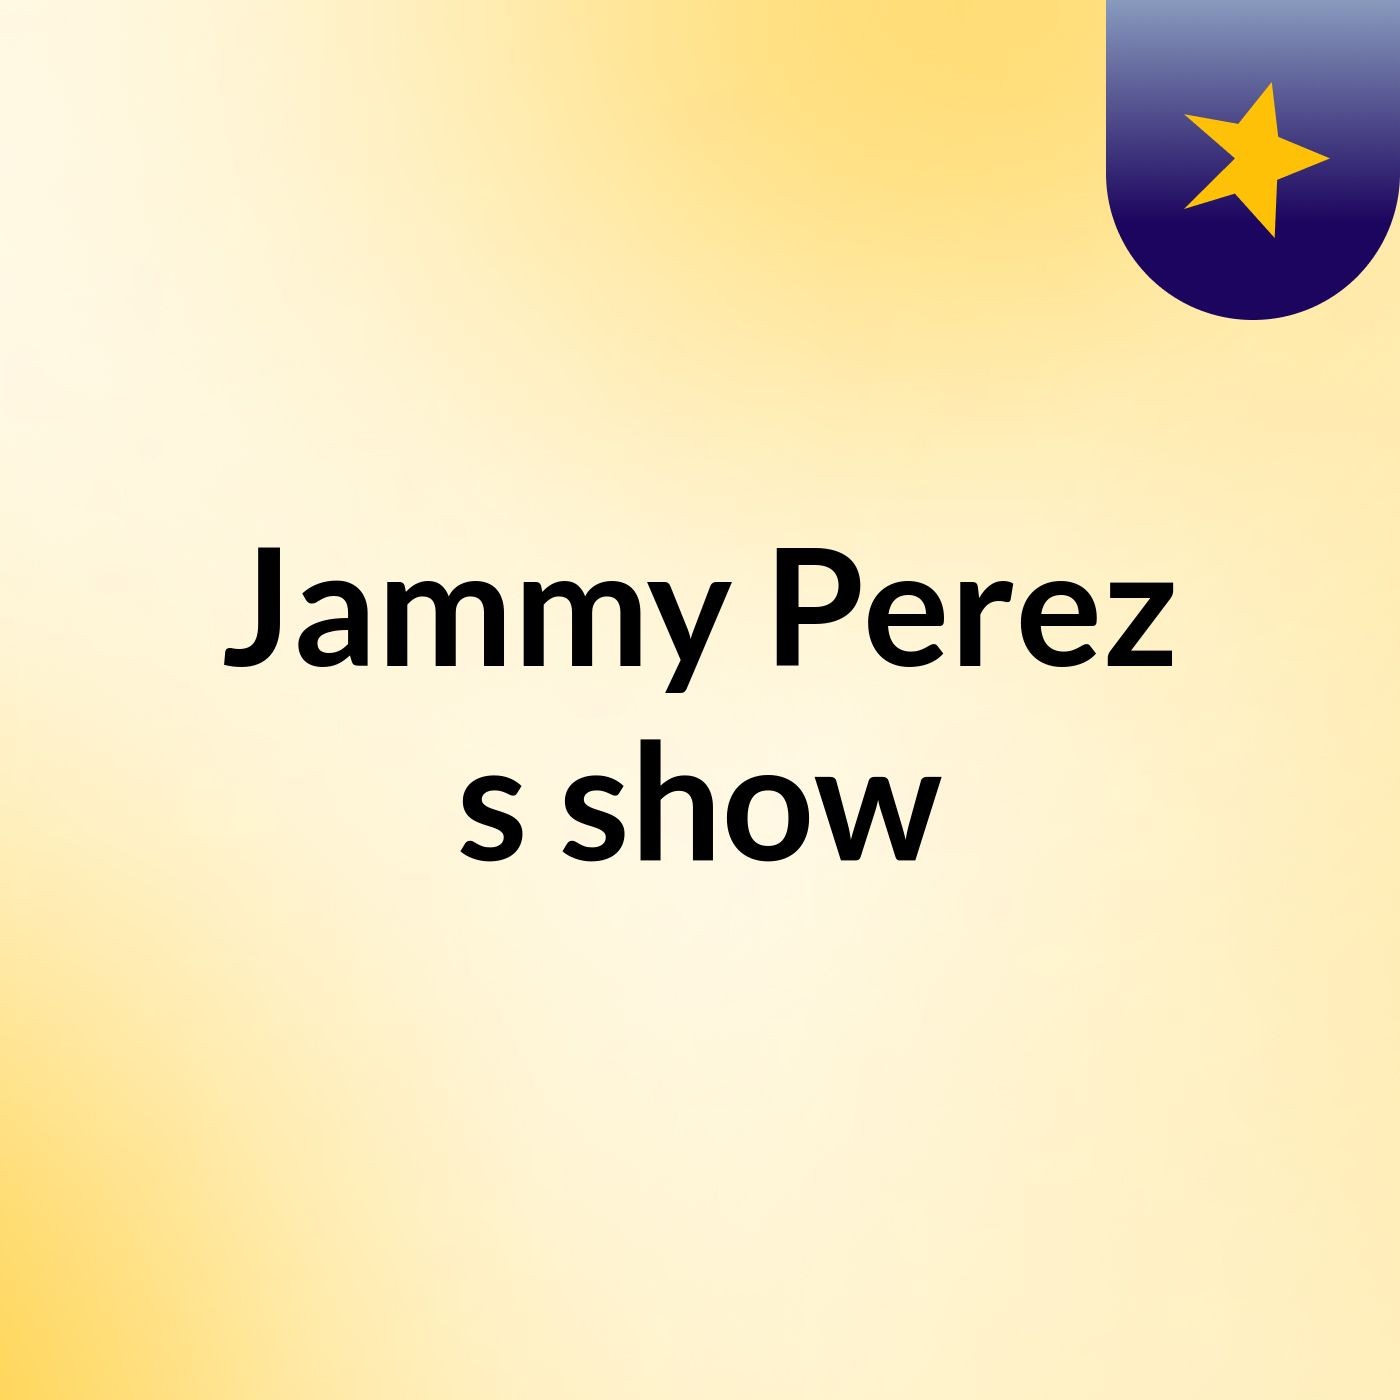 Jammy Perez's show